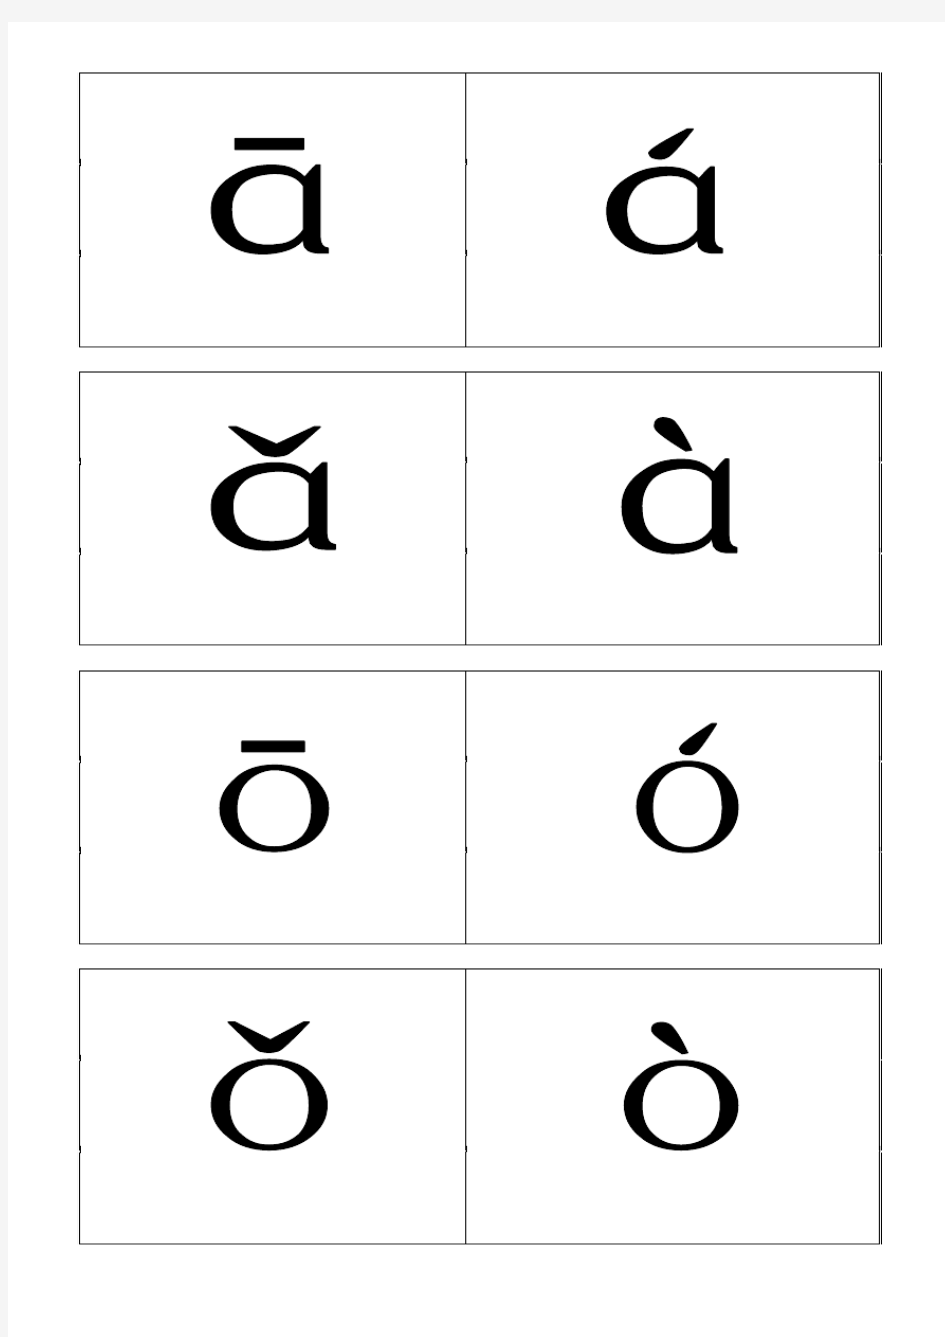 汉语拼音卡片制作修改版 - 四线卡片版